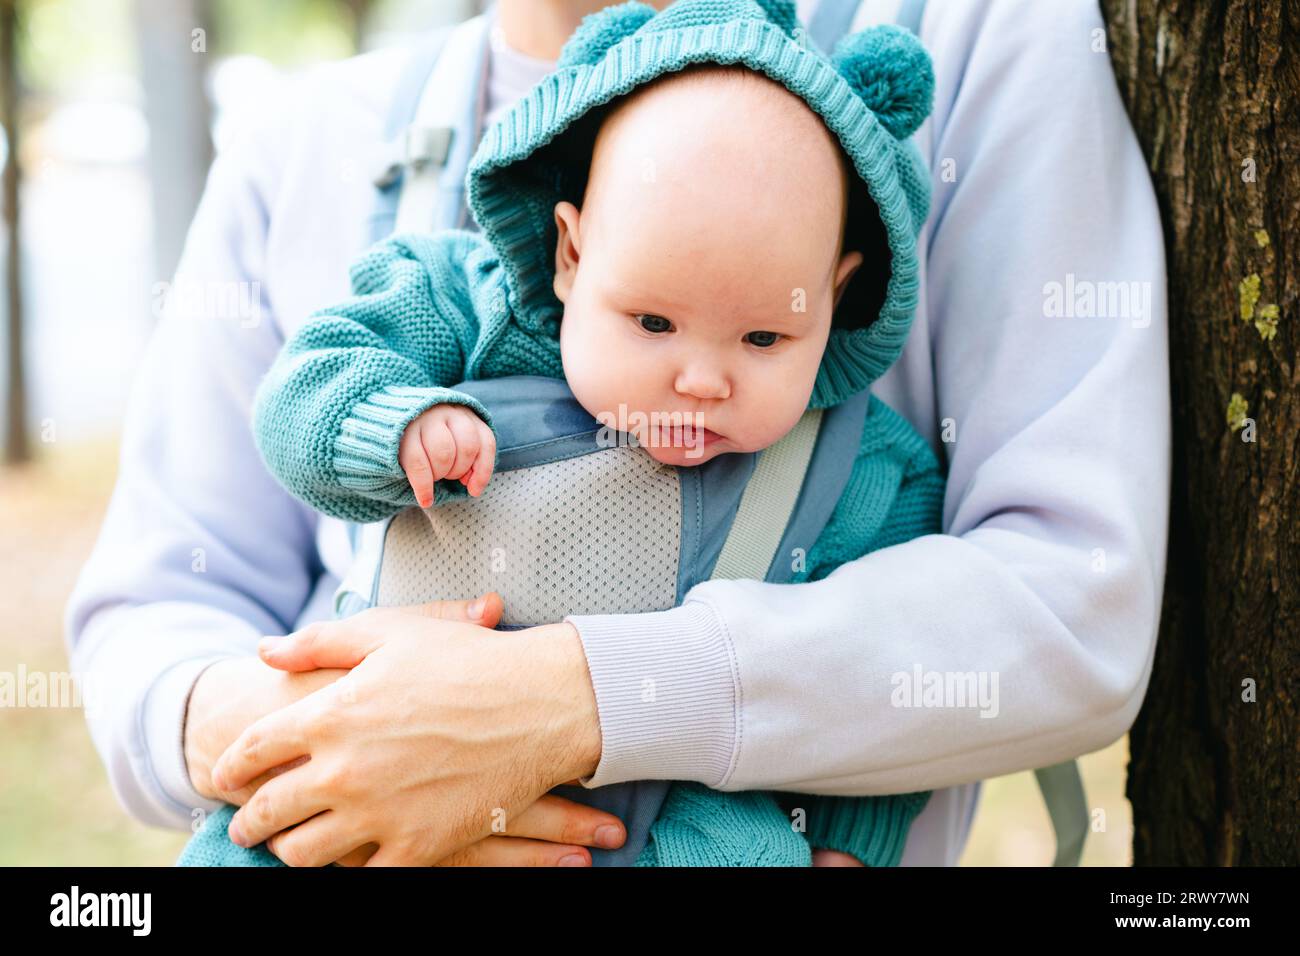 Bébé nouveau-né avec son jeune père dans une écharpe, gros plan Banque D'Images